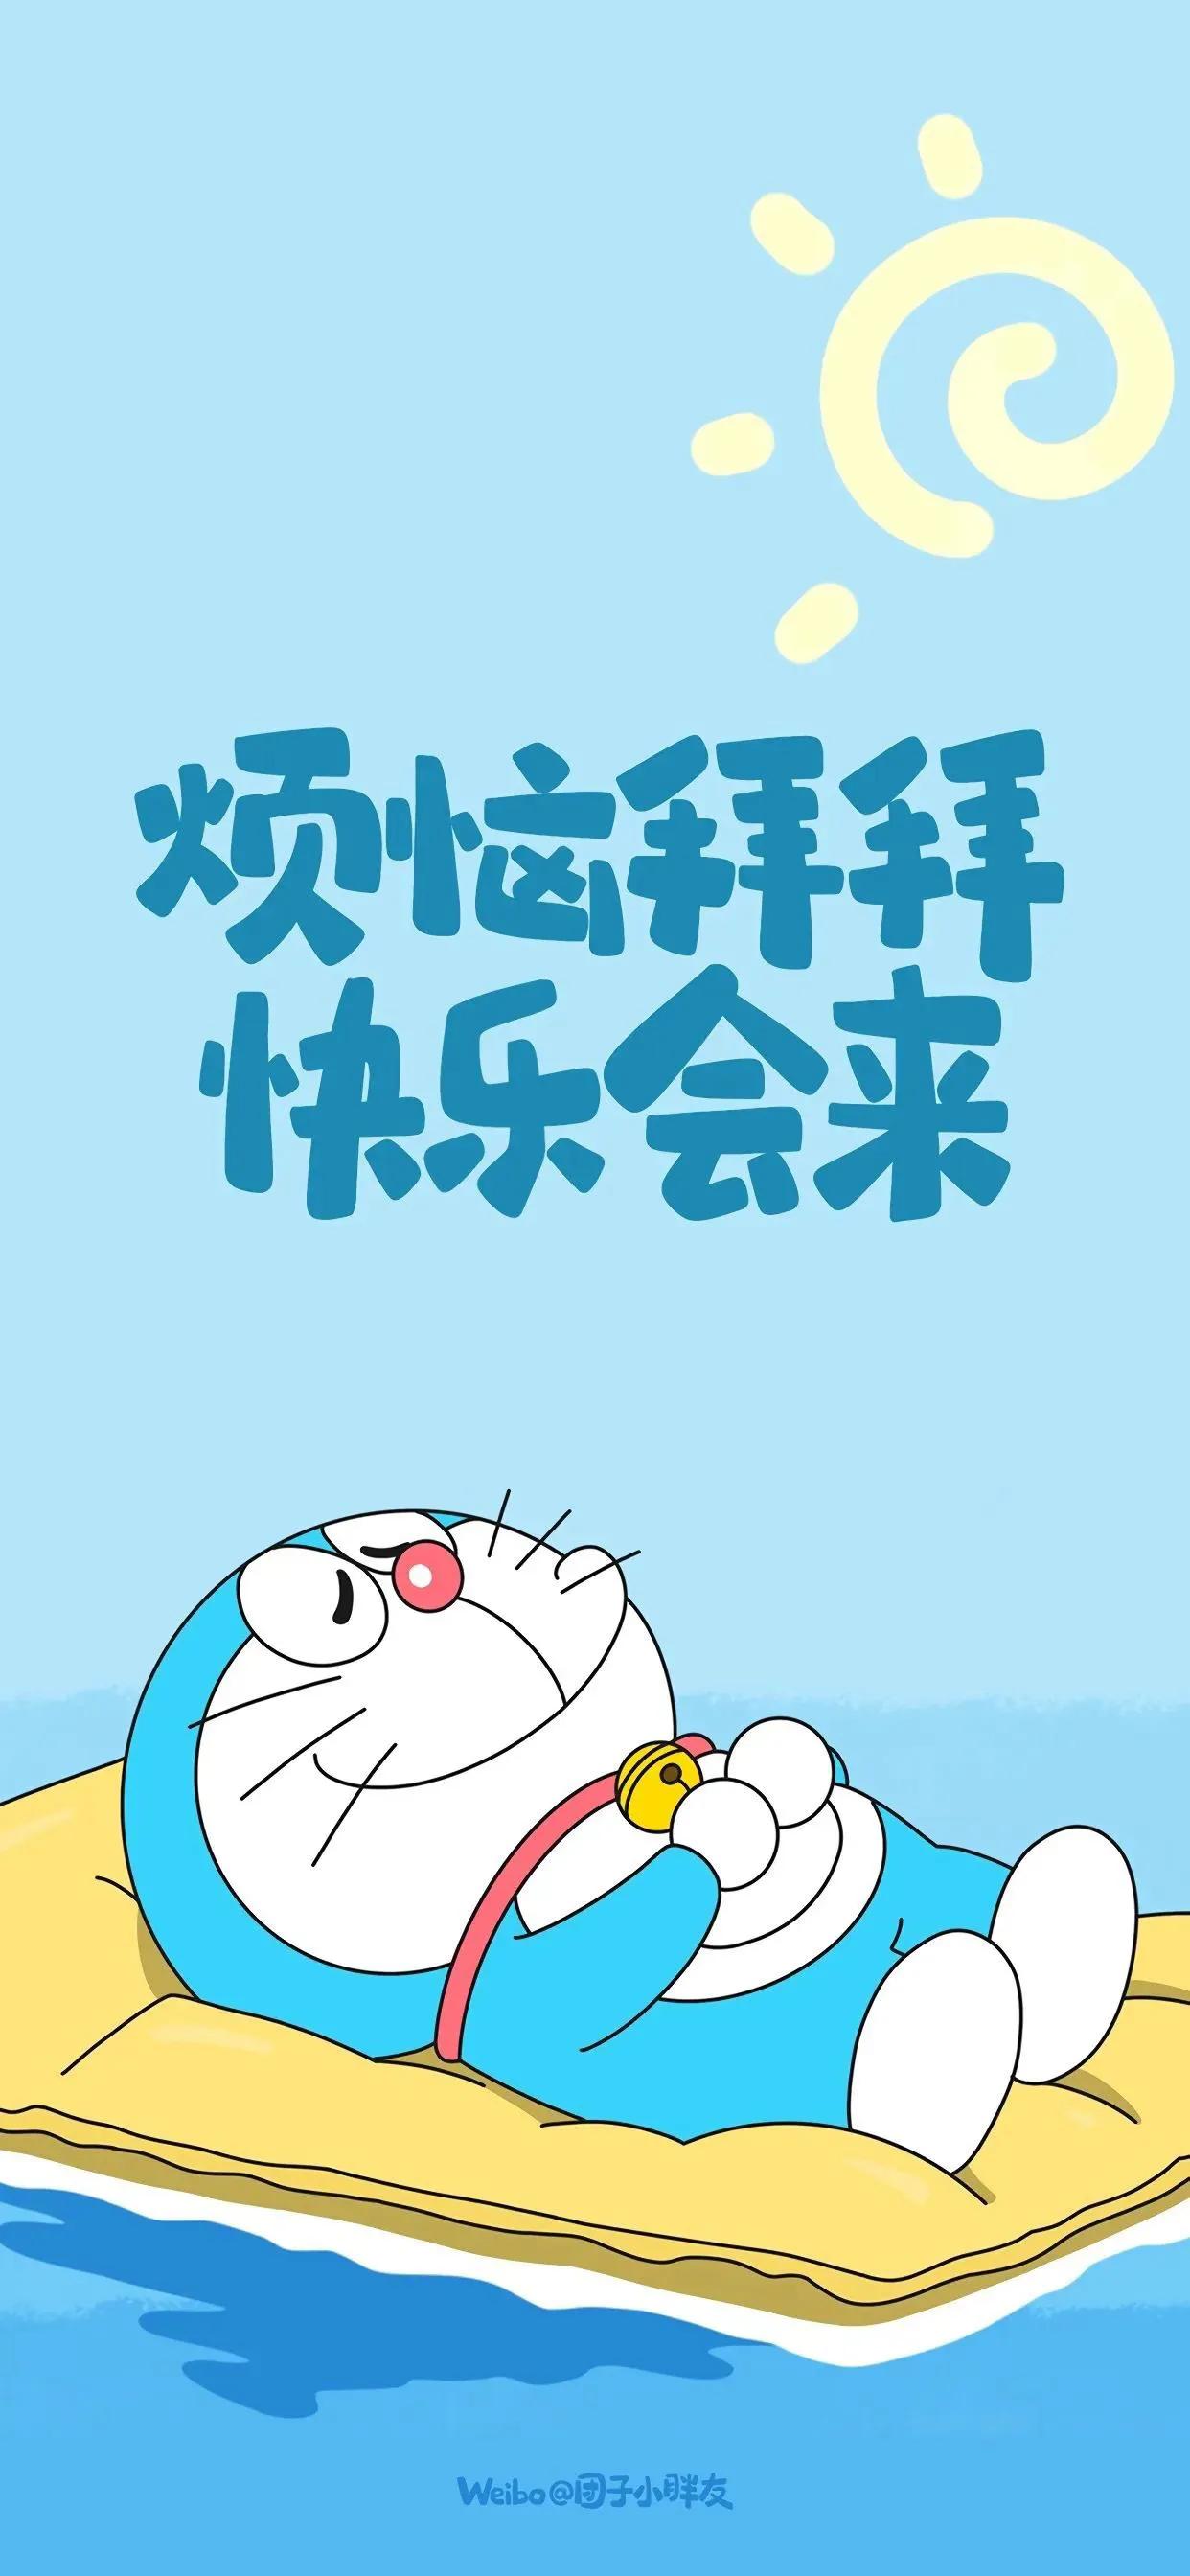 哆啦a梦朋友圈封面图片